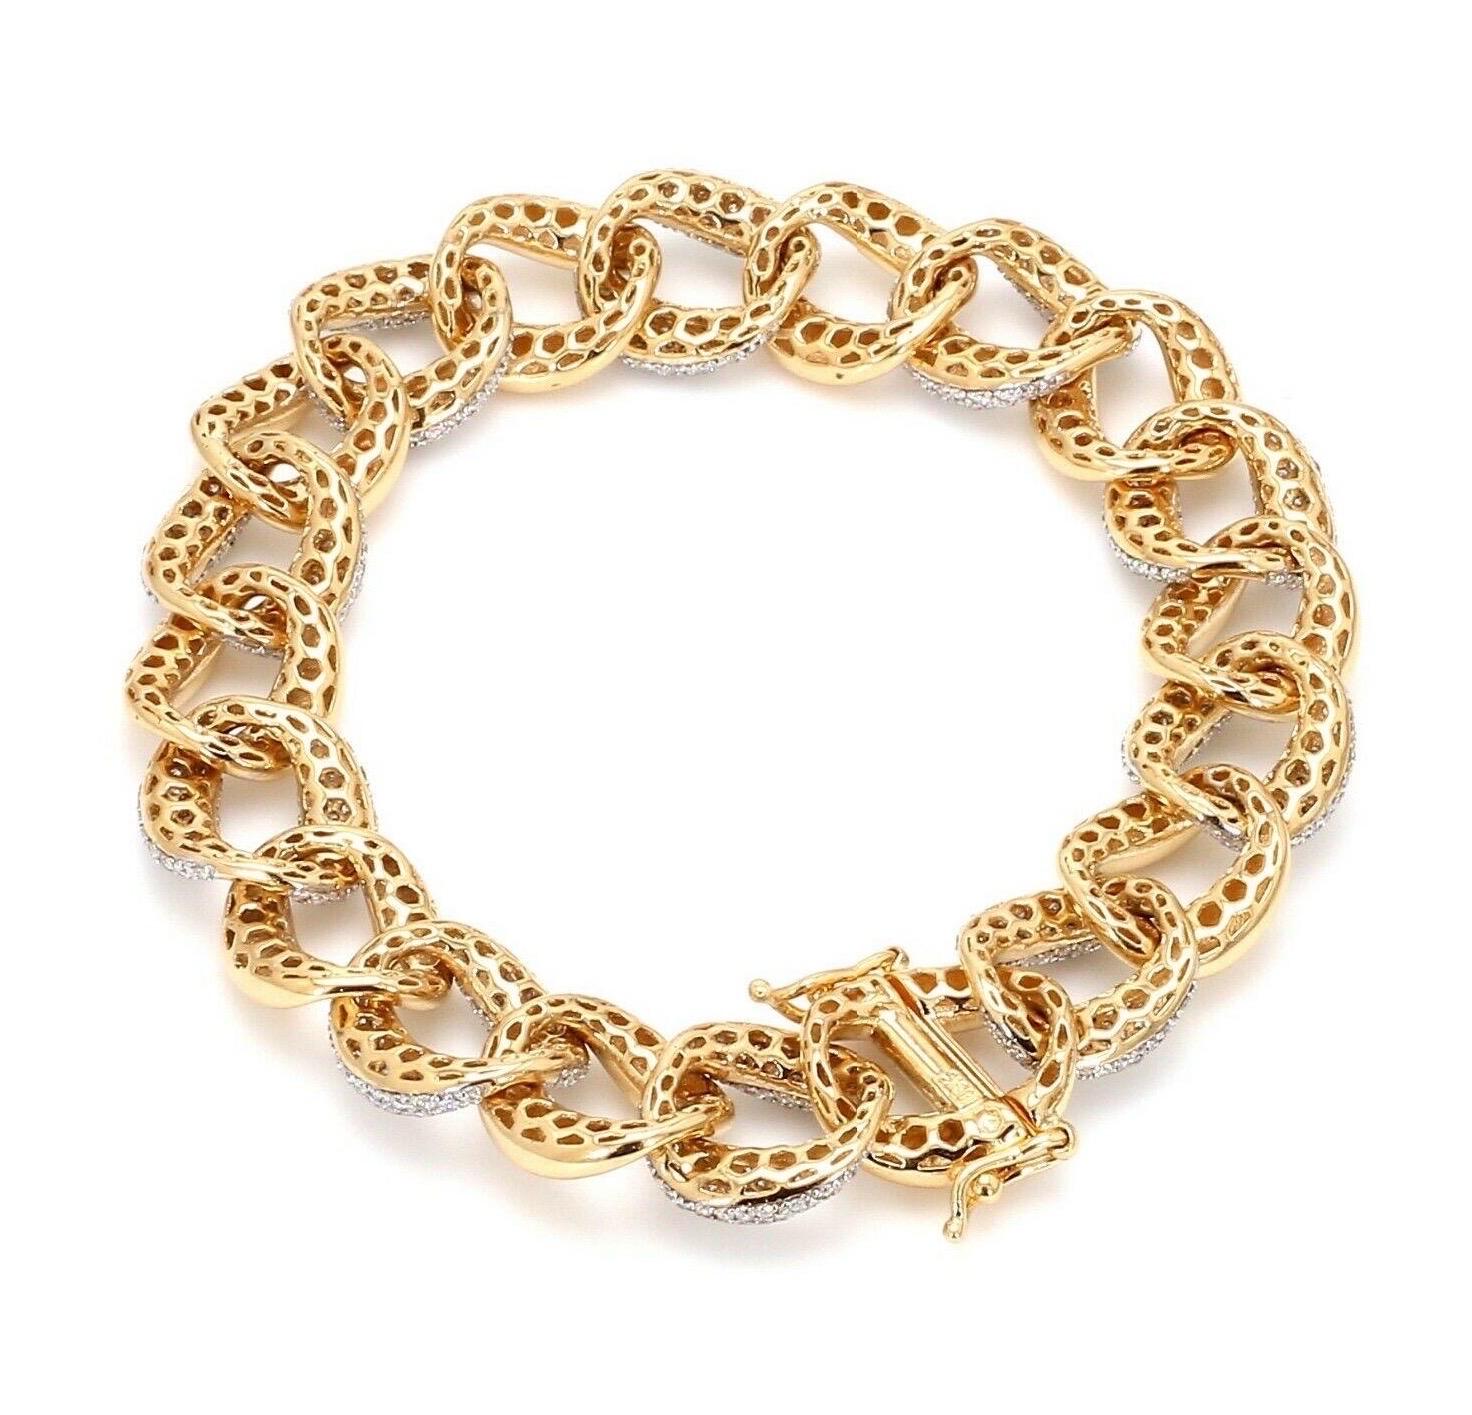 Réalisé en or jaune 18 carats, ce superbe bracelet à maillons est serti à la main de 5,60 carats de diamants étincelants. 
Taille du bracelet 7 pouces. Également disponible en or blanc.

SUIVEZ la vitrine de MEGHNA JEWELS pour découvrir la dernière